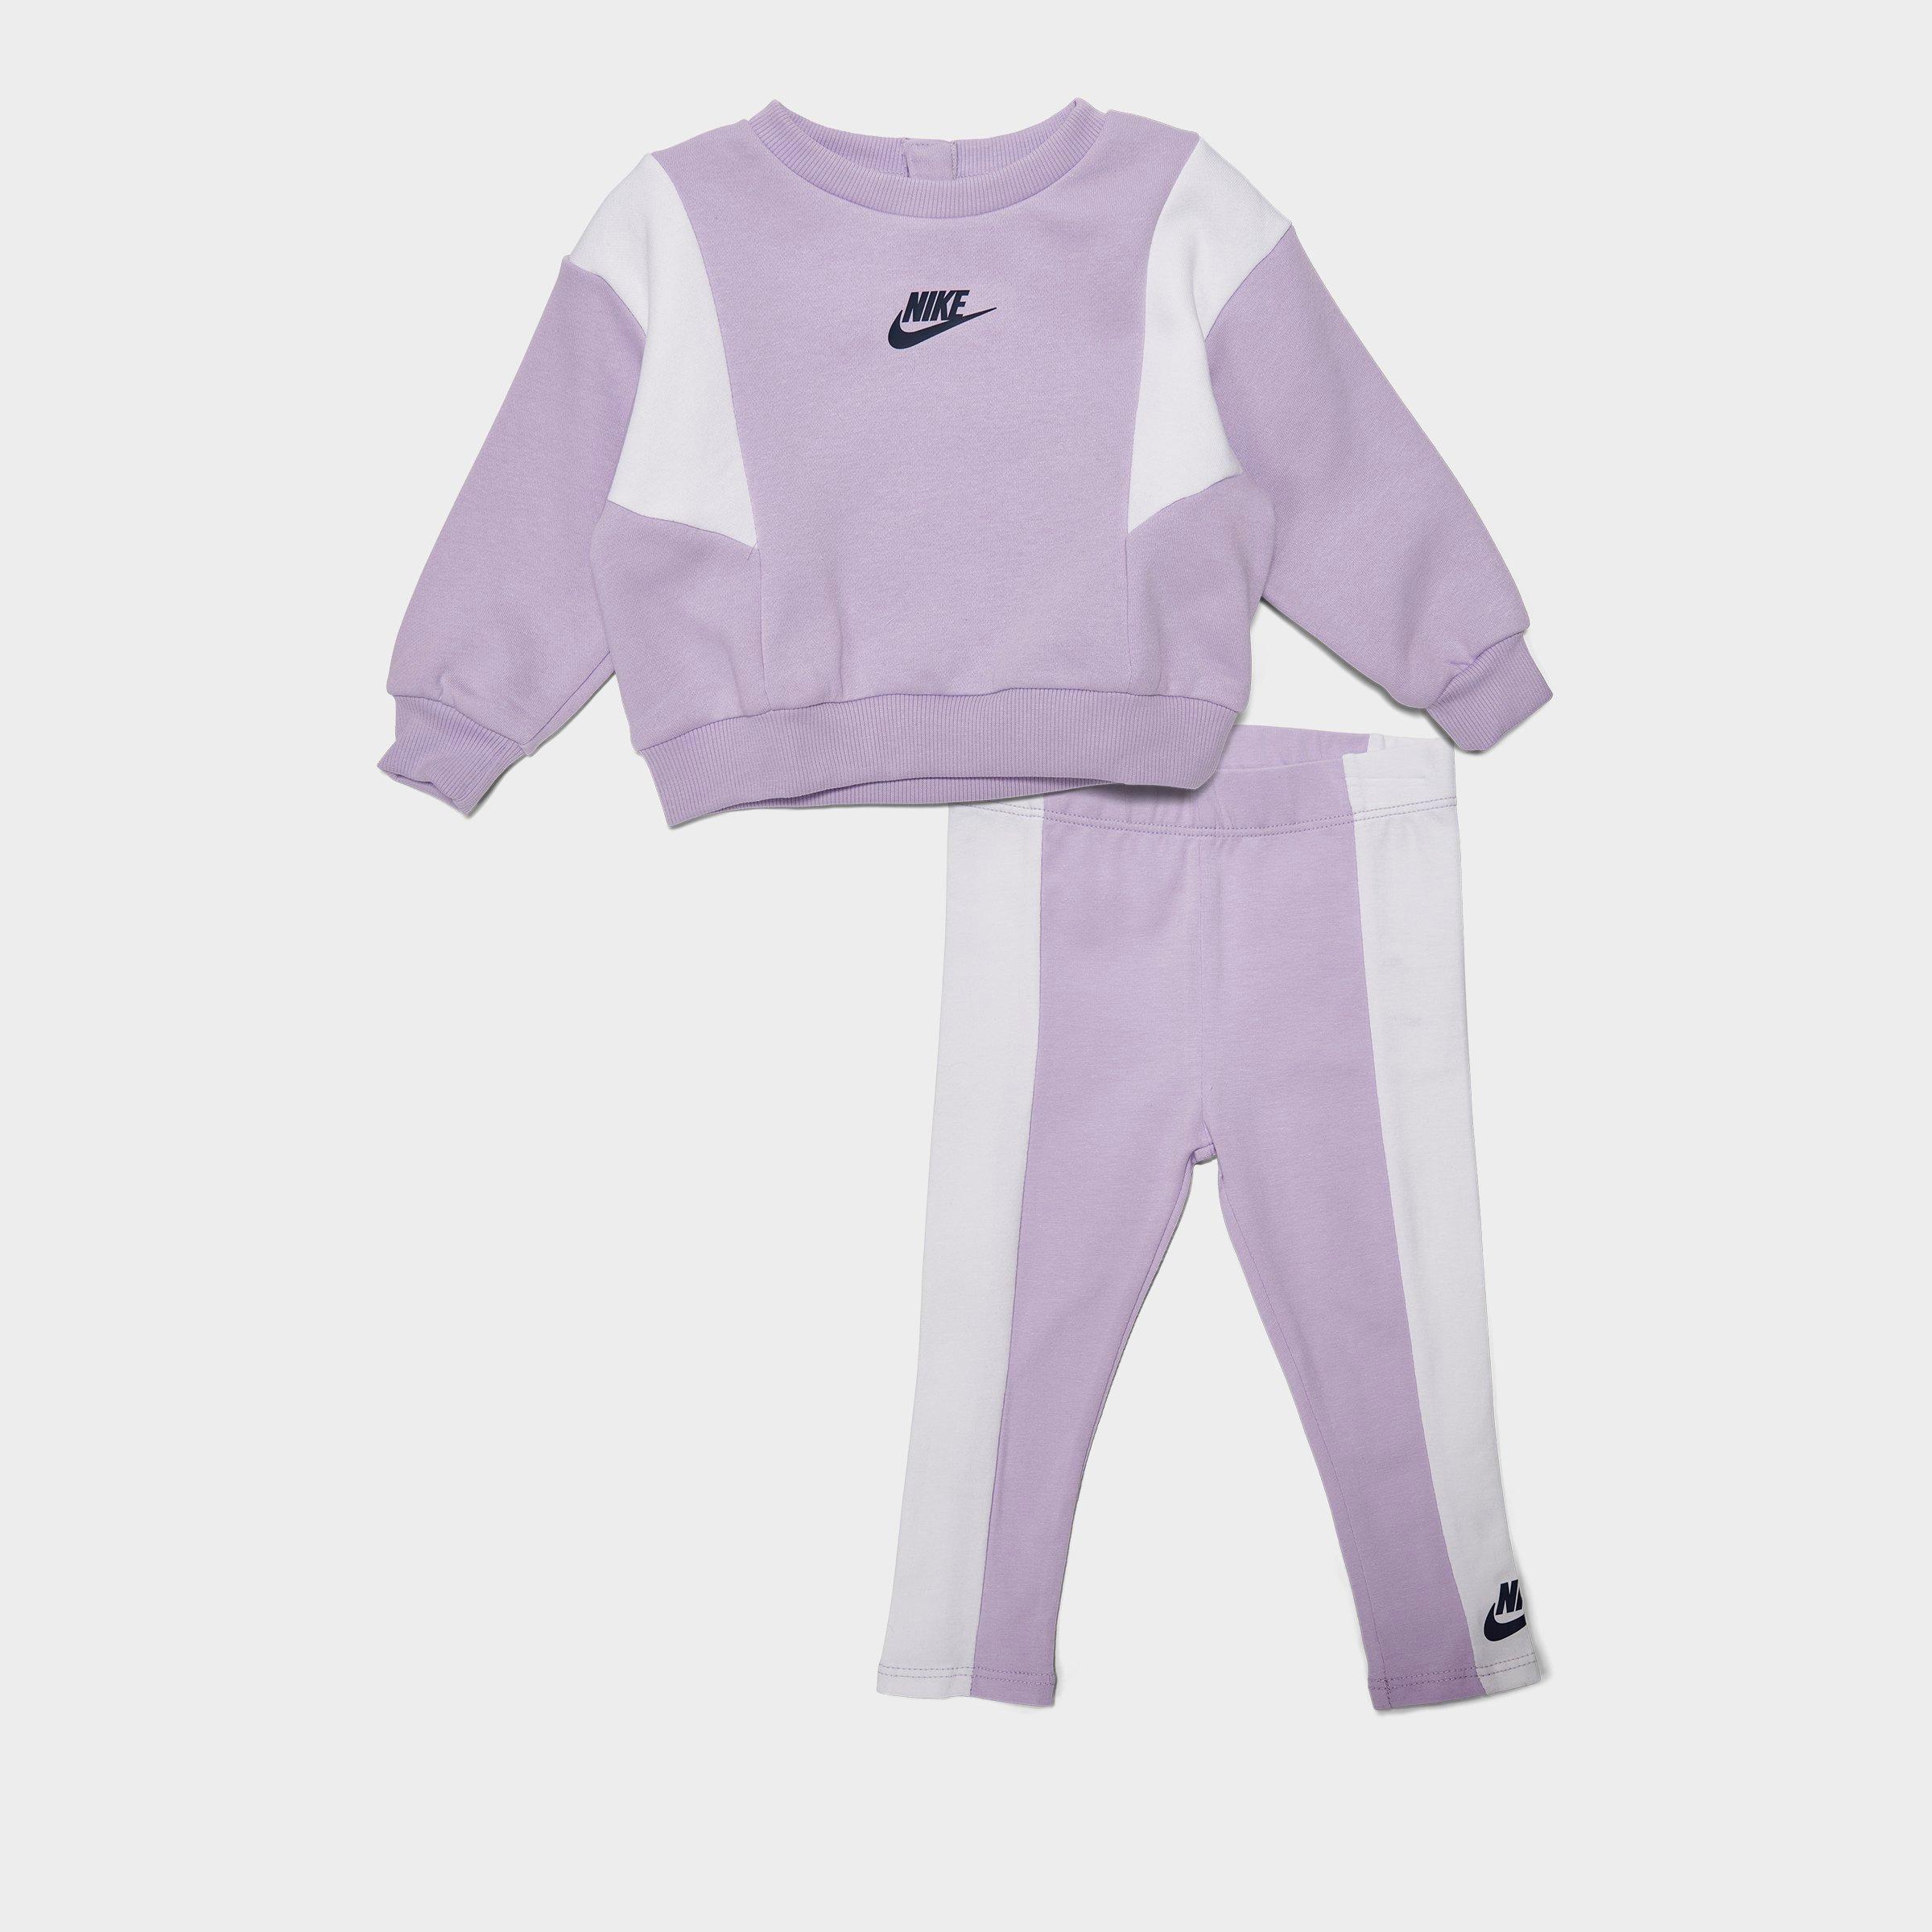 Girl's Infant Nike Crewneck Sweatshirt and Leggings Set